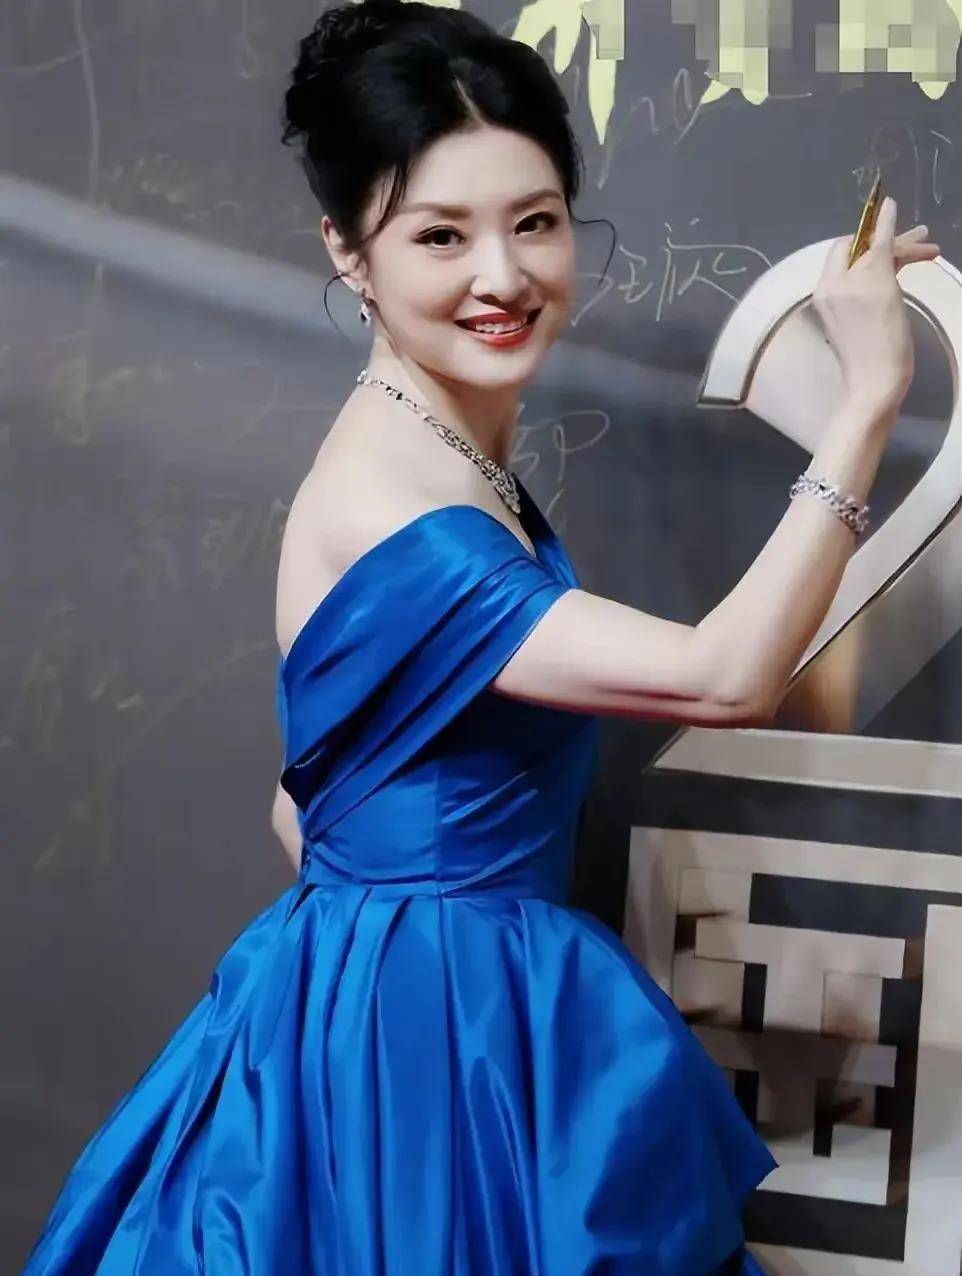 周涛蓝色斜肩礼裙造型,优雅大方闪耀舞台